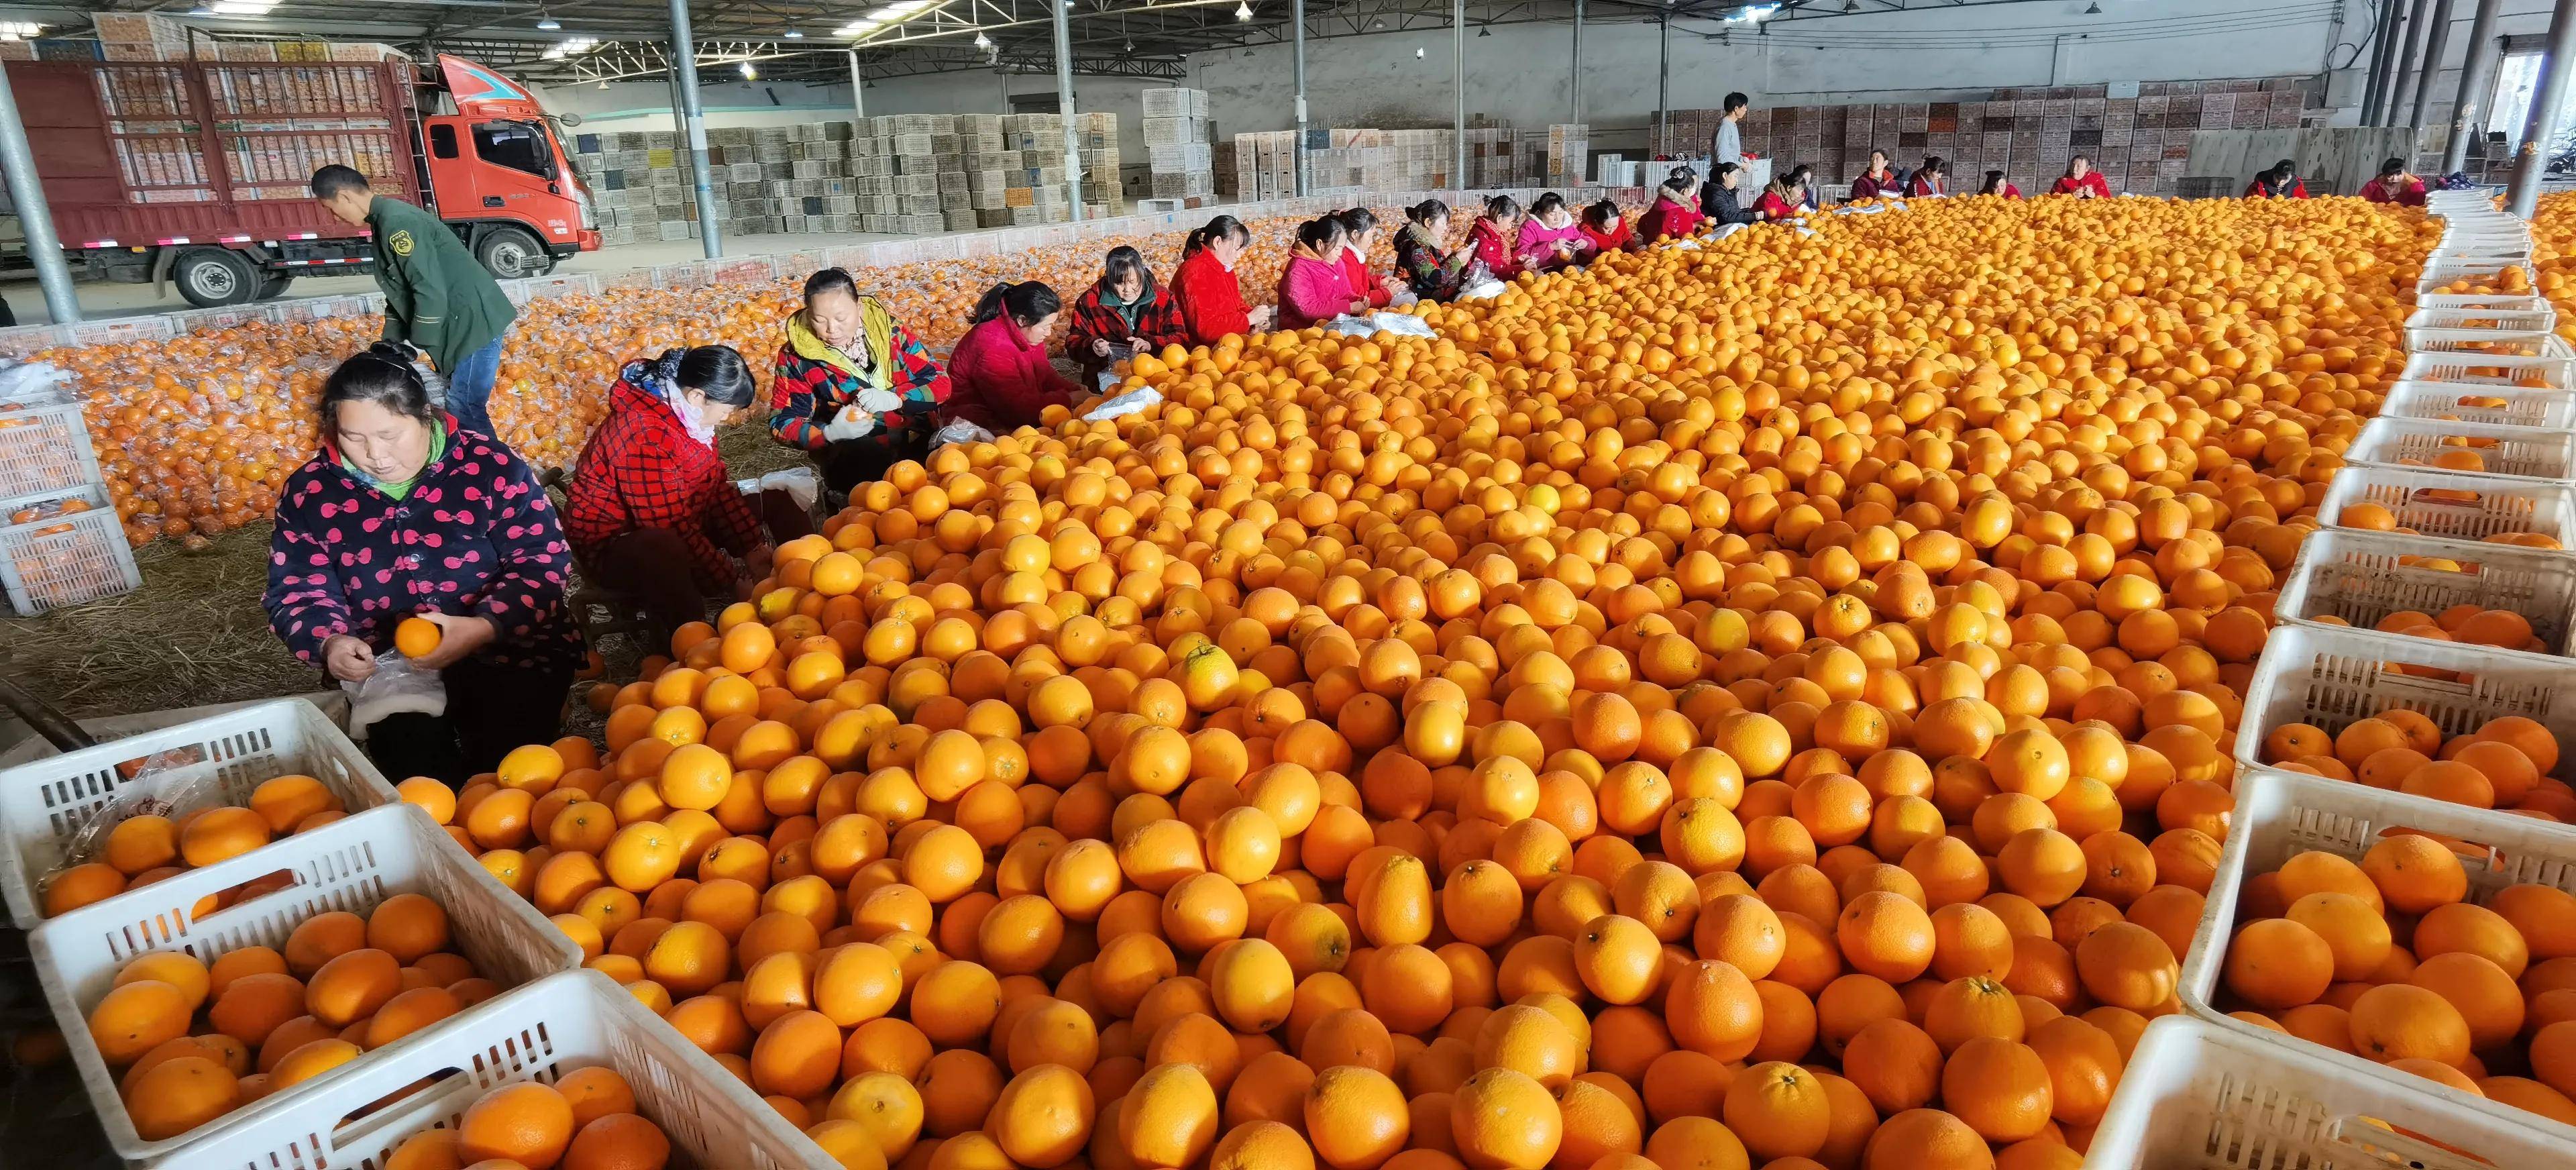 怪奇公社(刘洪进)湖北枝江消息:用绿色防控法管理柑橘,生产出安全而